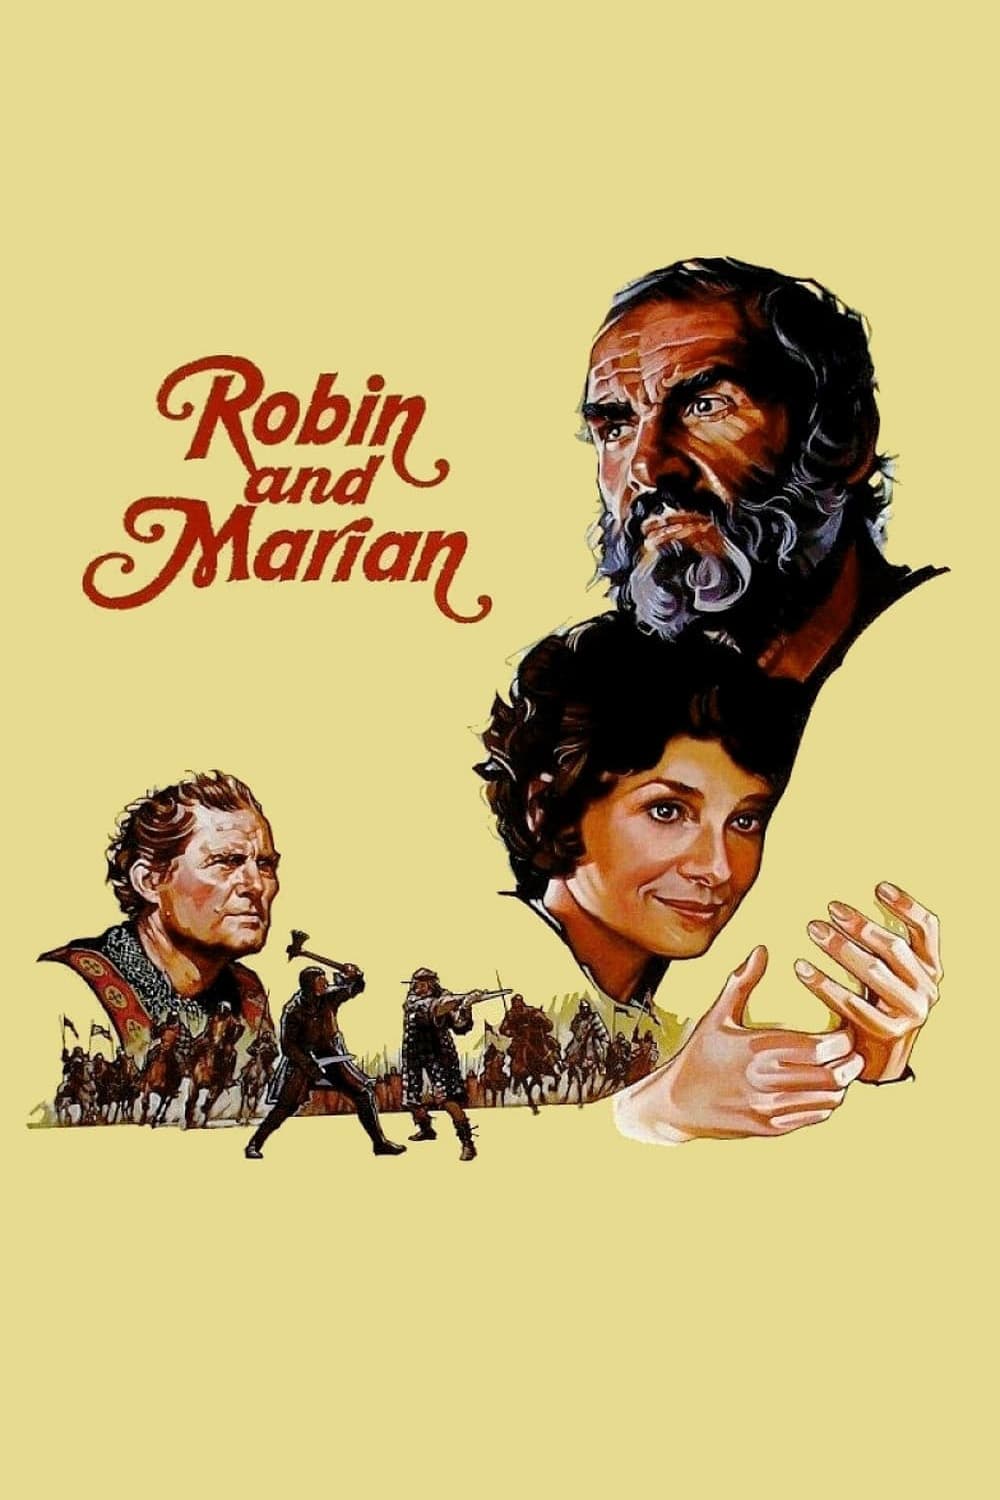 Plakat von "Robin und Marian"